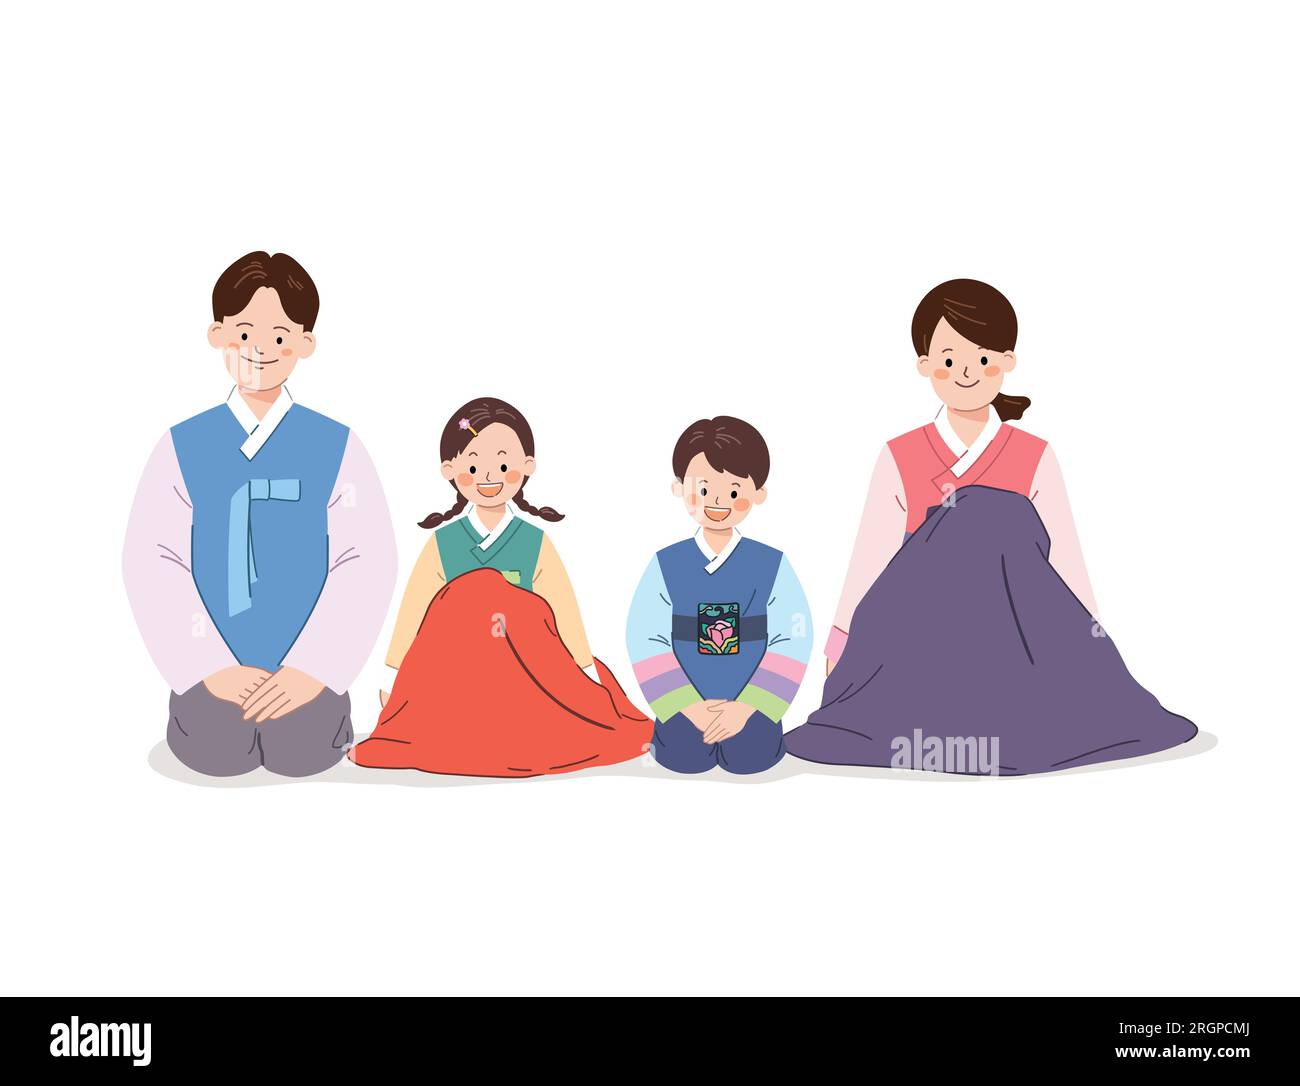 Die koreanische Familie sitzt zusammen und trägt traditionelles hanbok. Stock Vektor